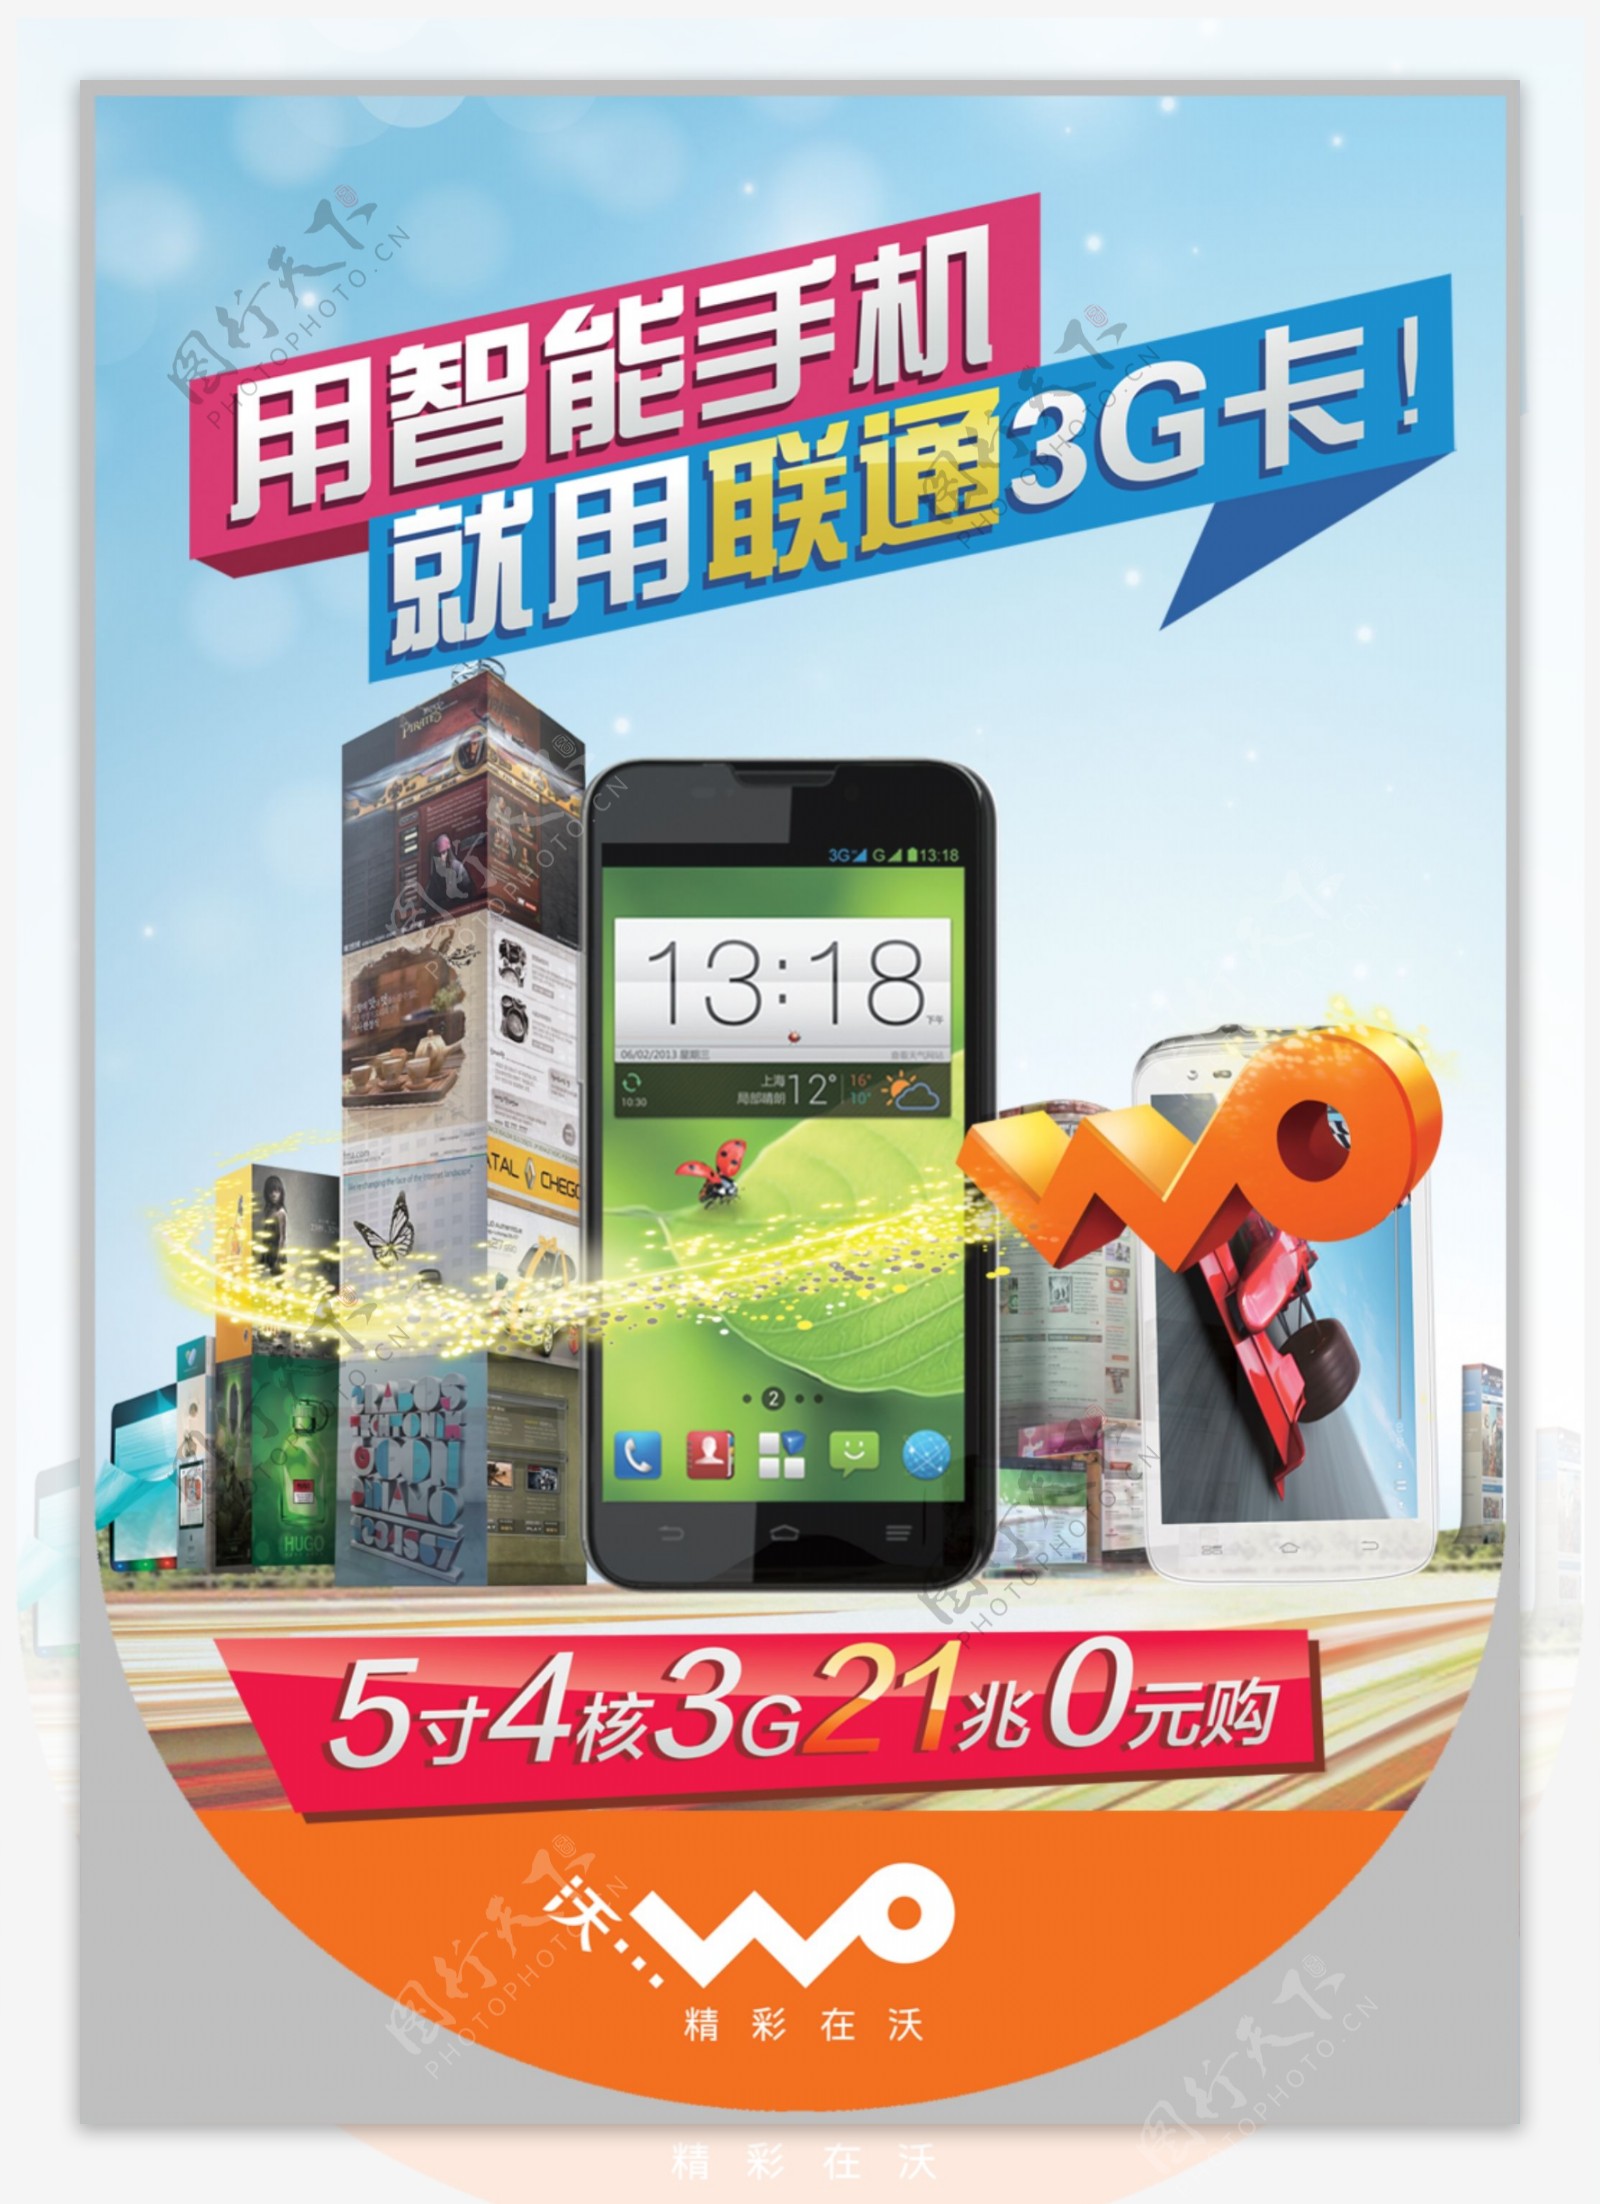 大屏多核高性能智能3G手机促销海报